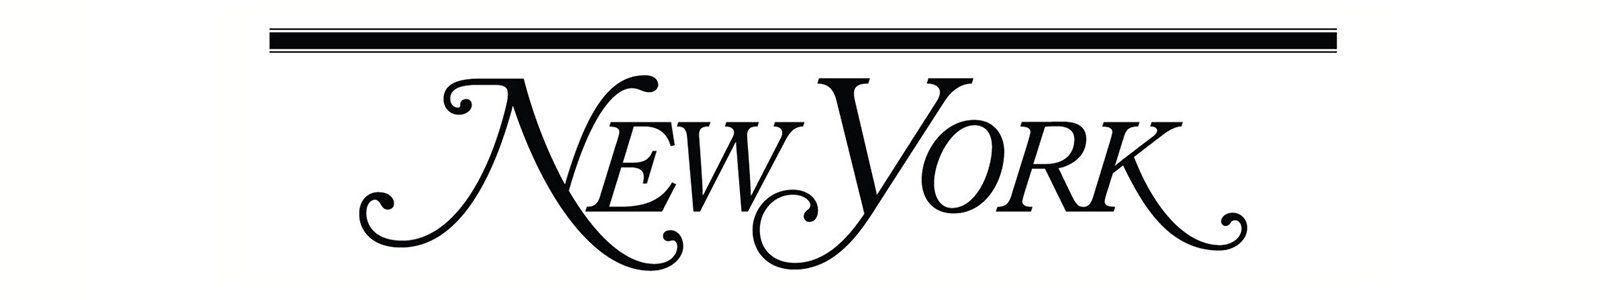 New York Magazine Logo - New York Magazine – Only NY